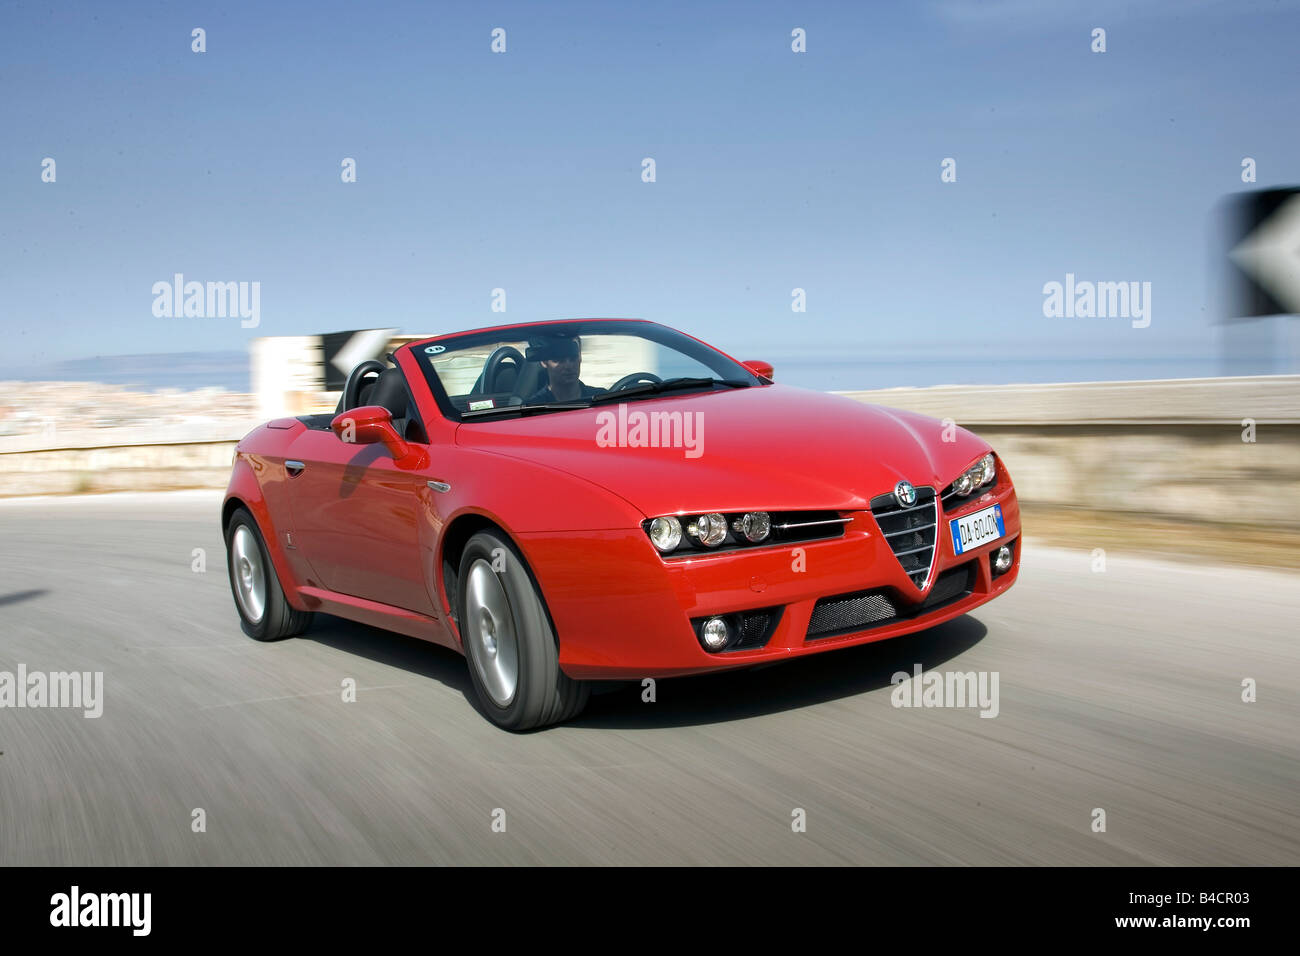 Alfa Romeo Spider 3.2 V6 JTS Q, l'année de modèle 2006-, rouge, la conduite, la diagonale de l'avant, vue frontale, country road, open top Banque D'Images